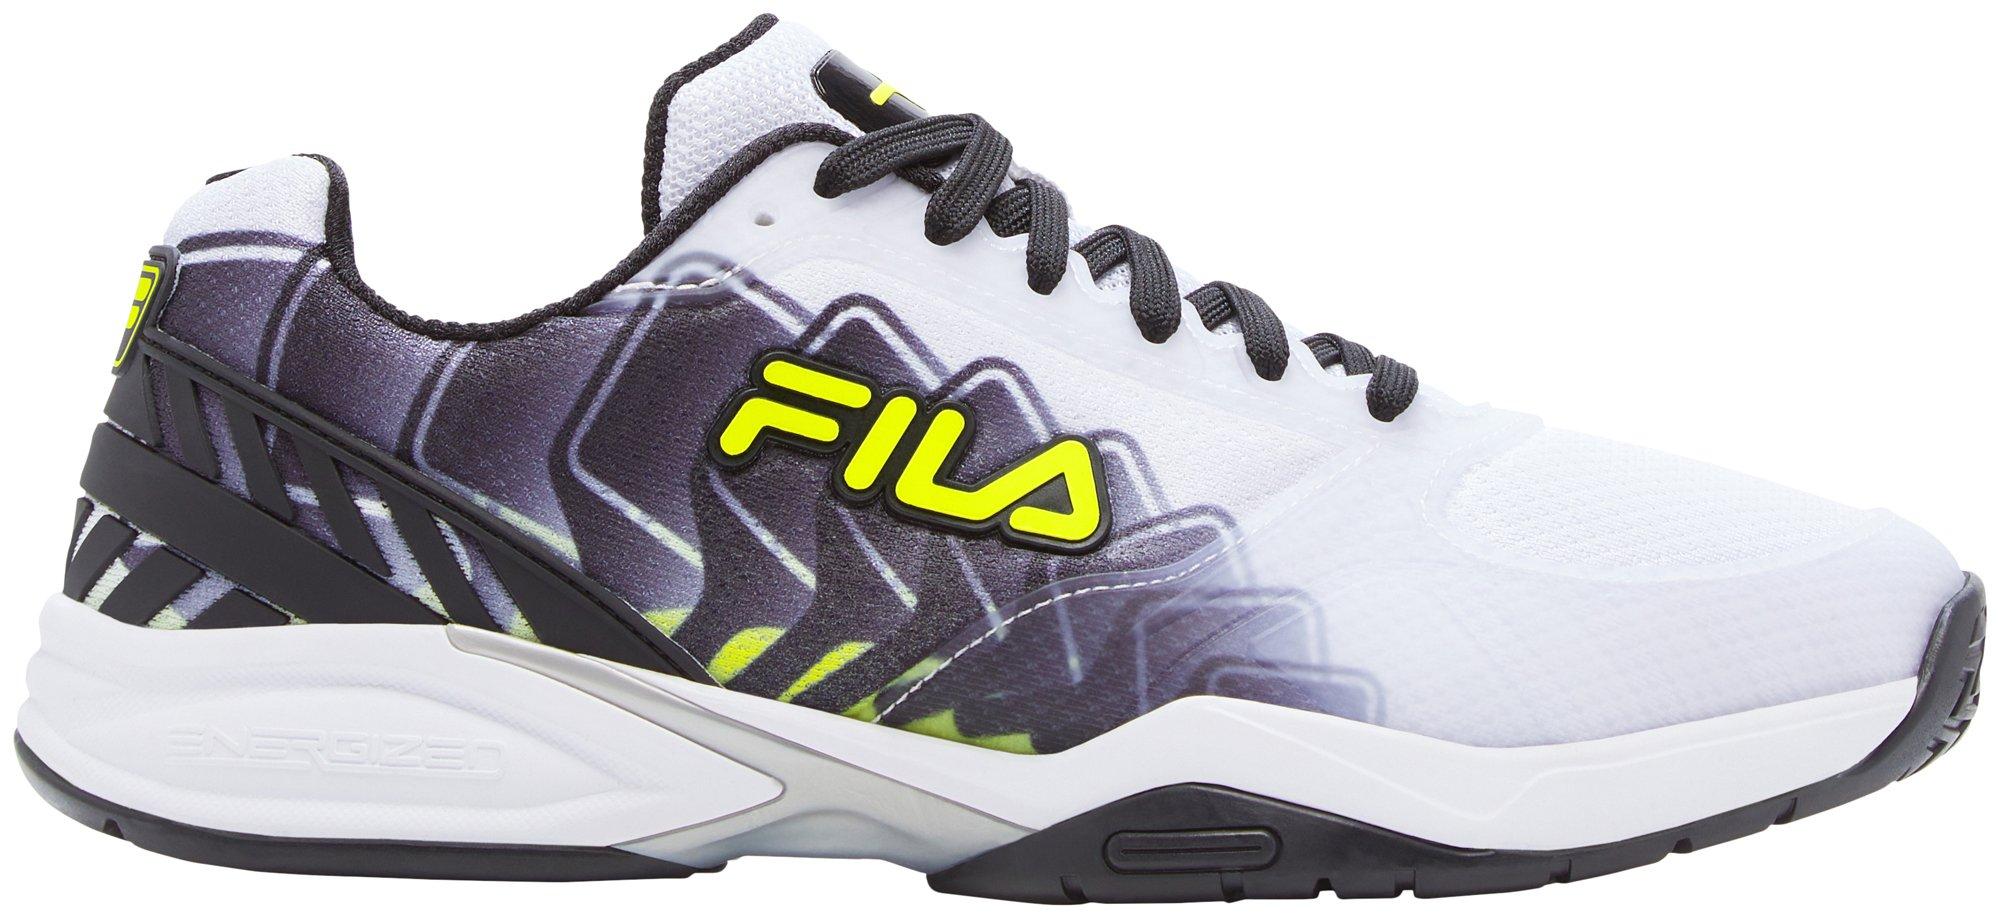 FILA Volley Zone Women's Pickleball Shoe